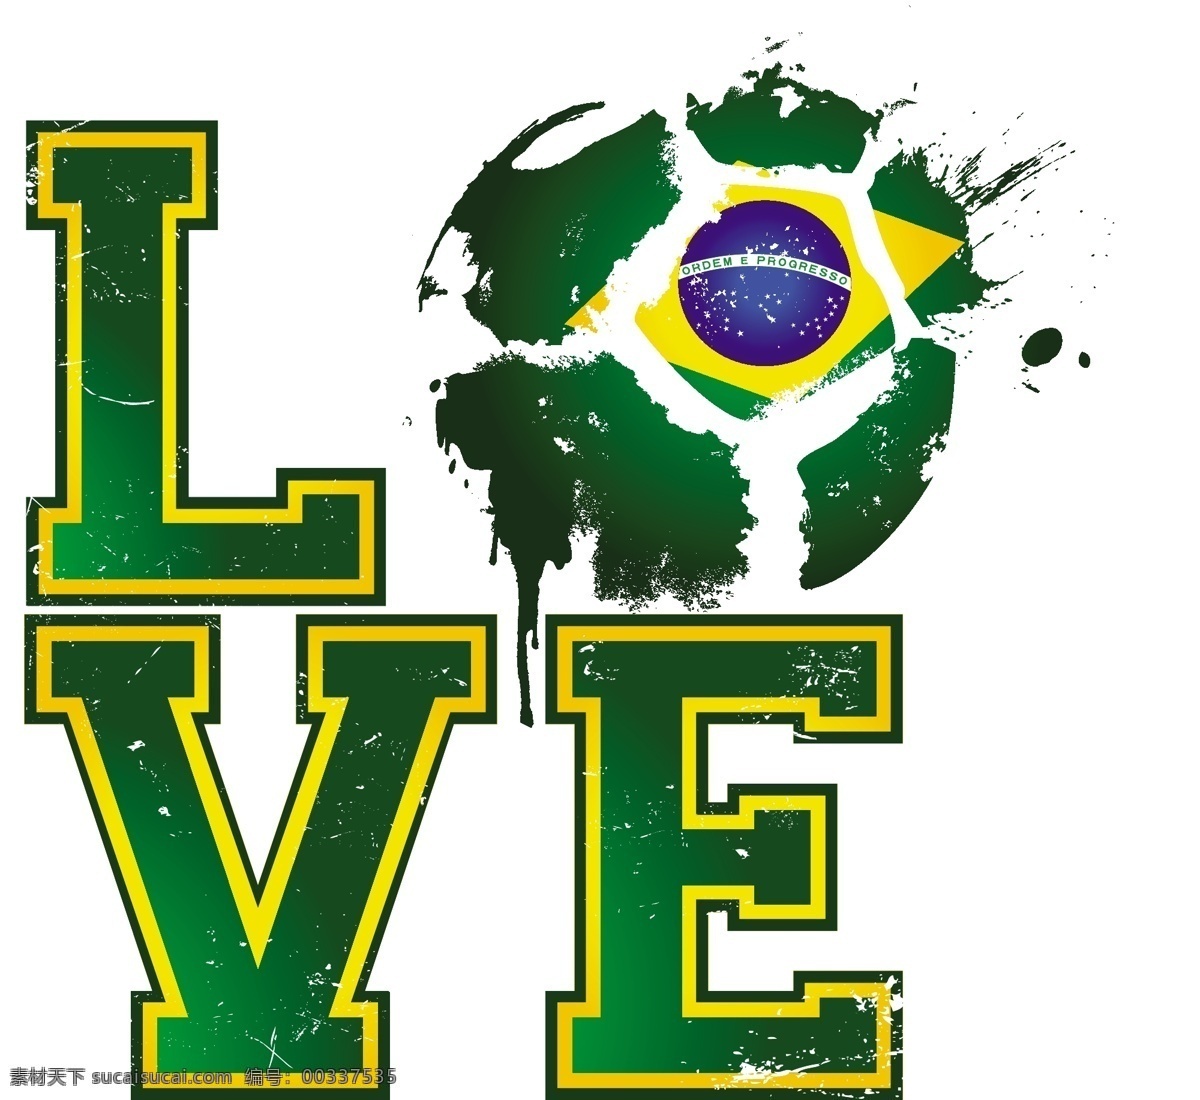 足球 love 矢量 字体 绿色 艺术 装饰图案 设计元素 高清 广告装饰图案 源文件